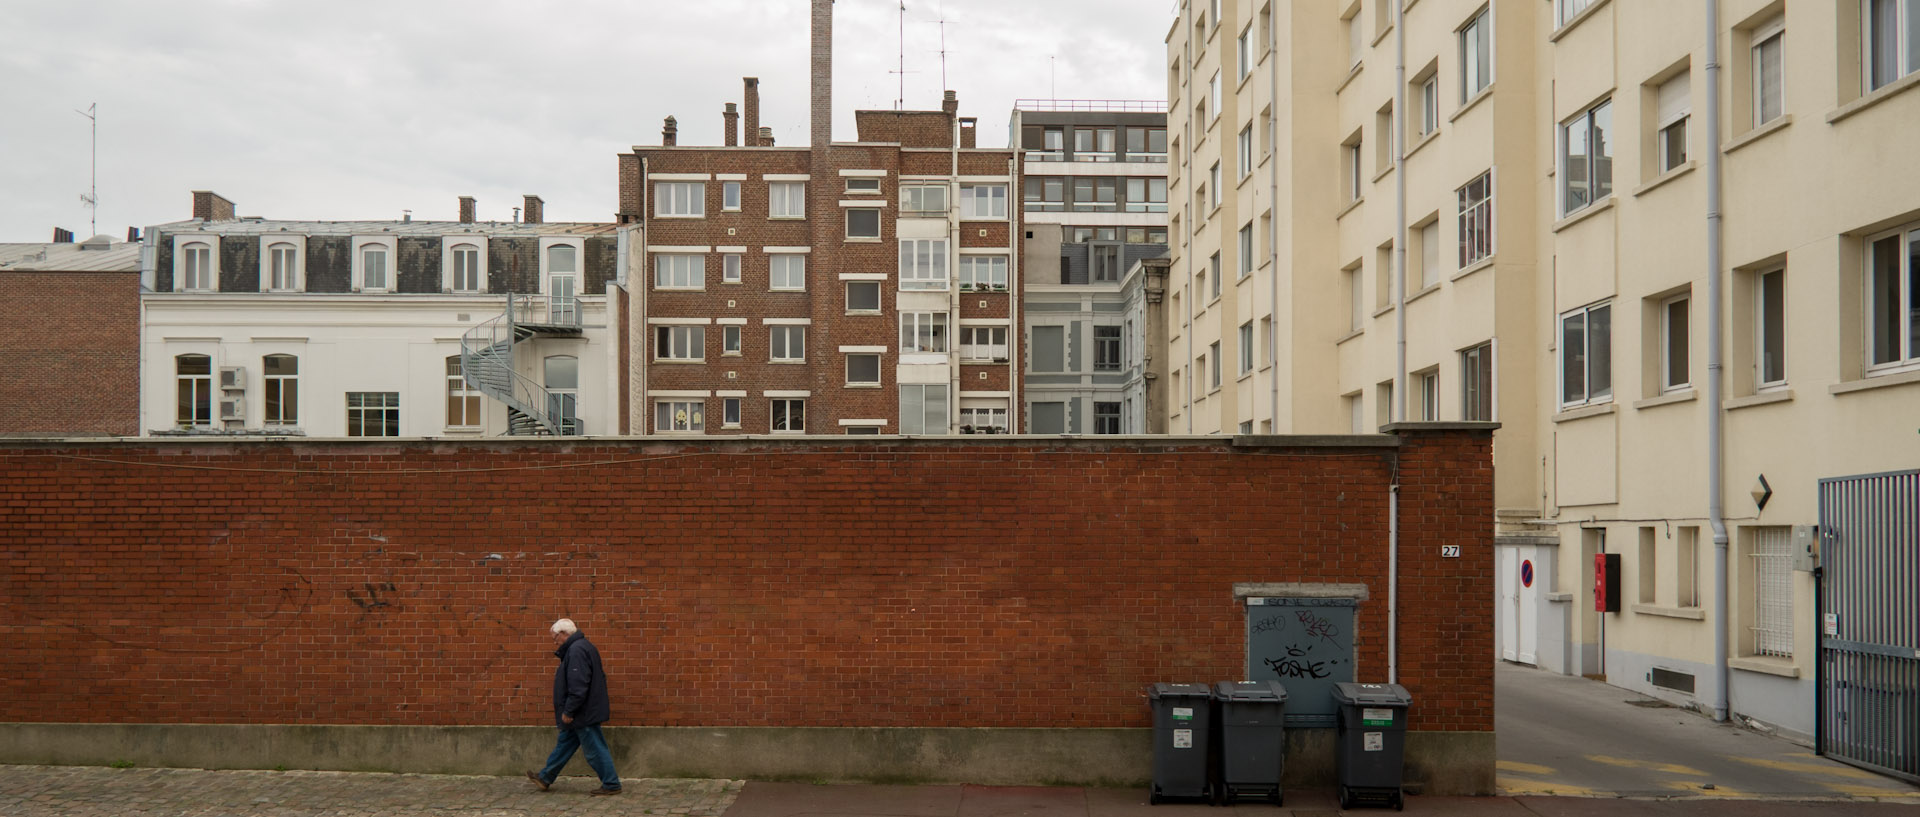 Homme marchant le long d'un mur, rue de la Baignerie, à Lille.